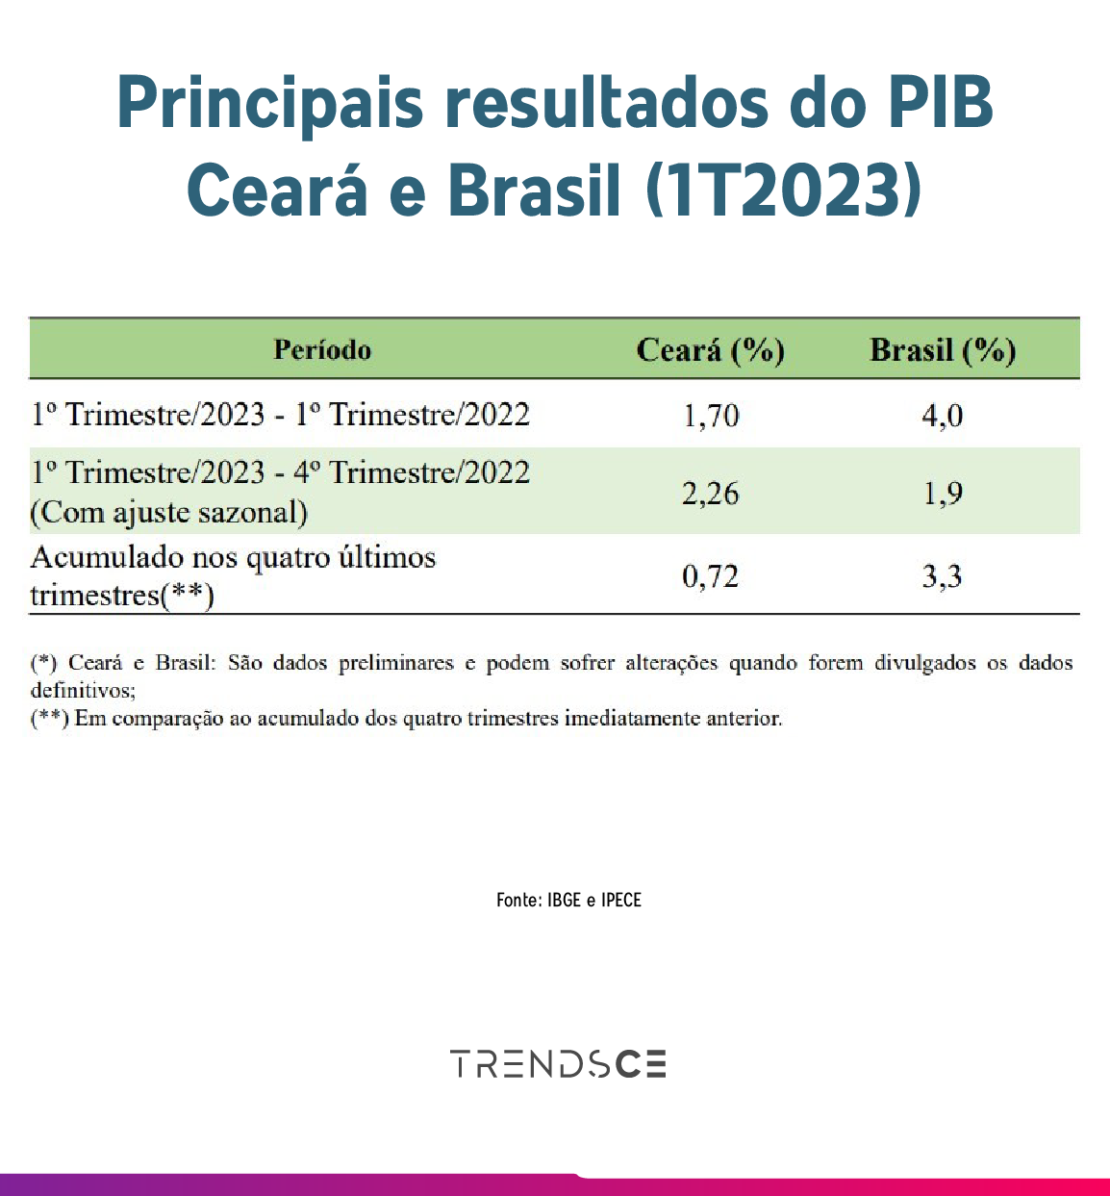 pib cearense e brasileiro no primeiro trimestre de 2023